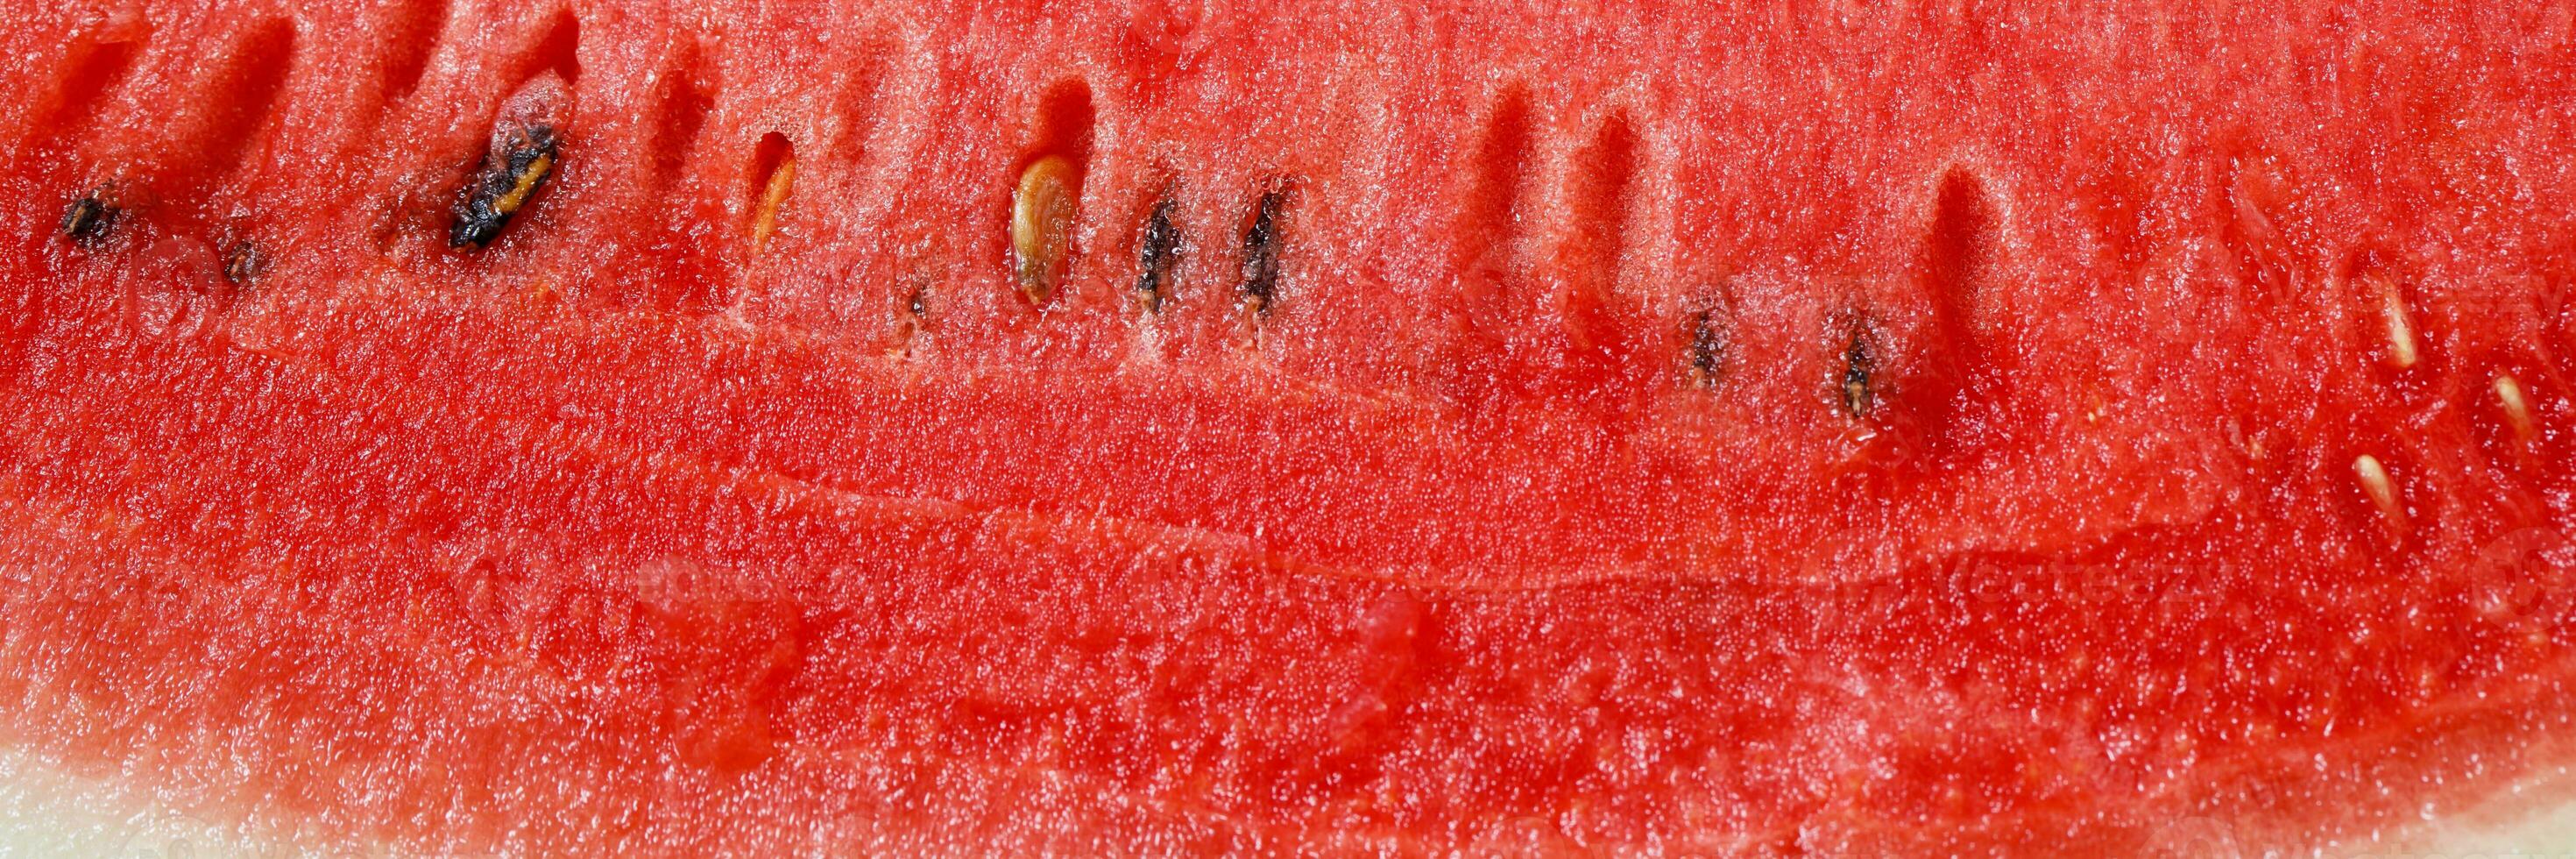 vermelho Melancia fruta textura fundo cenário rico dentro saudável nutrientes foto